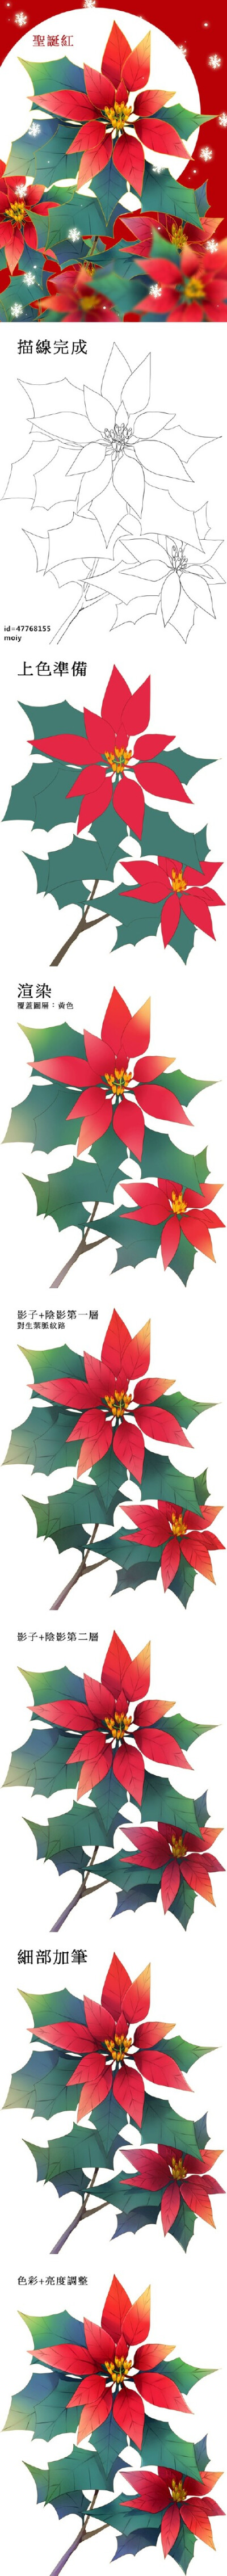 【via微博 SAI资源库】绘师moiy的花卉教程合集 圣诞红